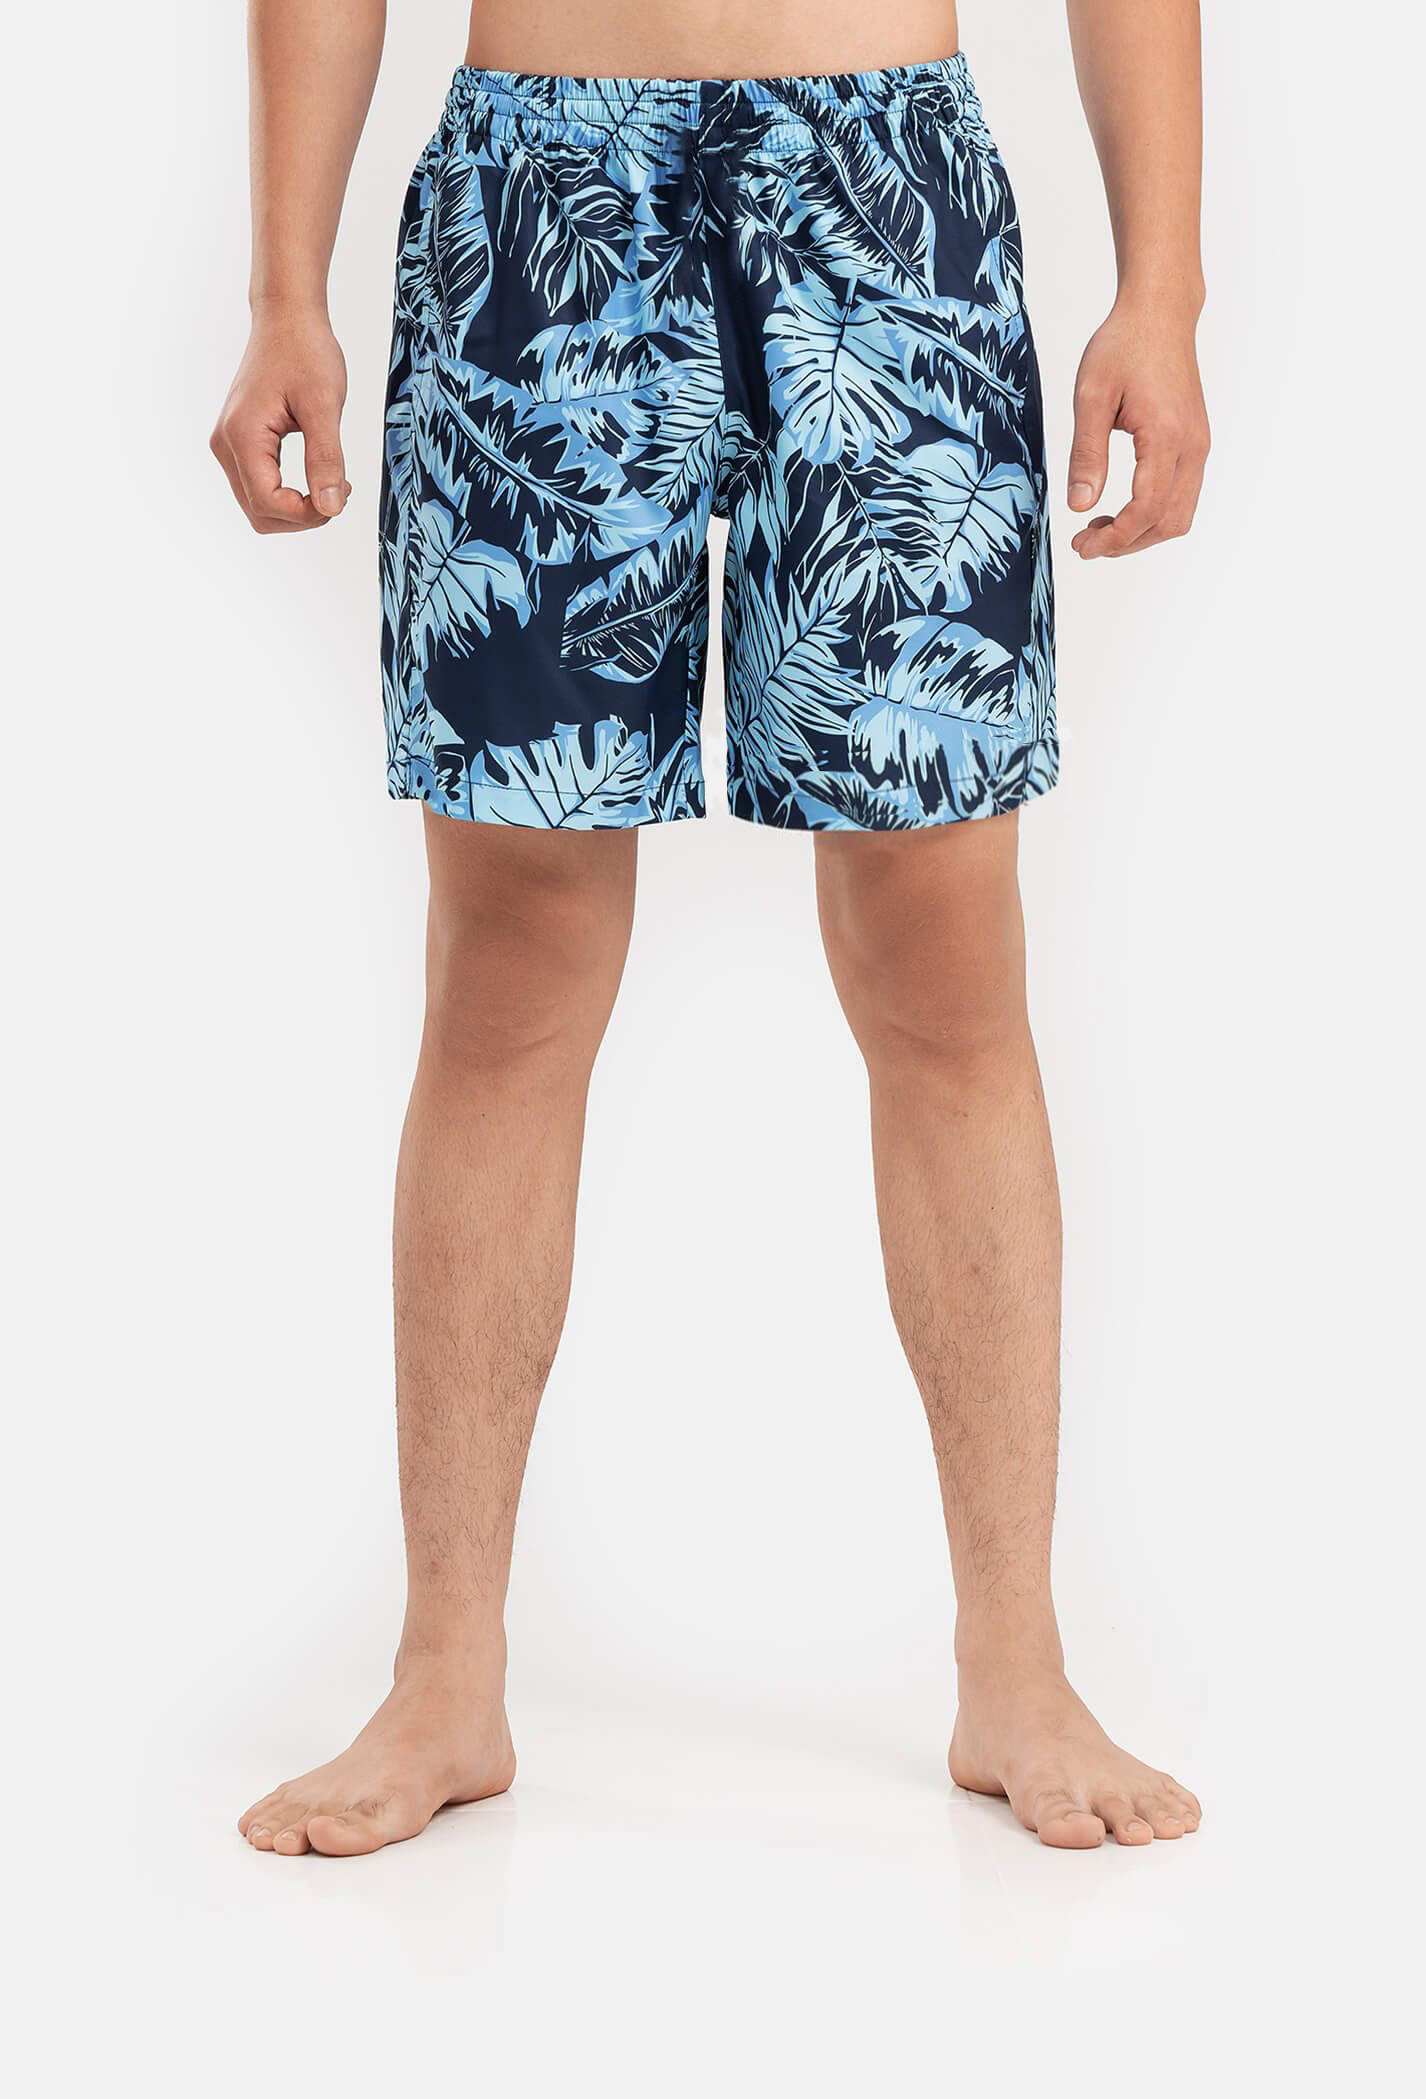 FLASH SALE - Quần shorts nam Classic Beach có túi khoá sau Xanh nhạt